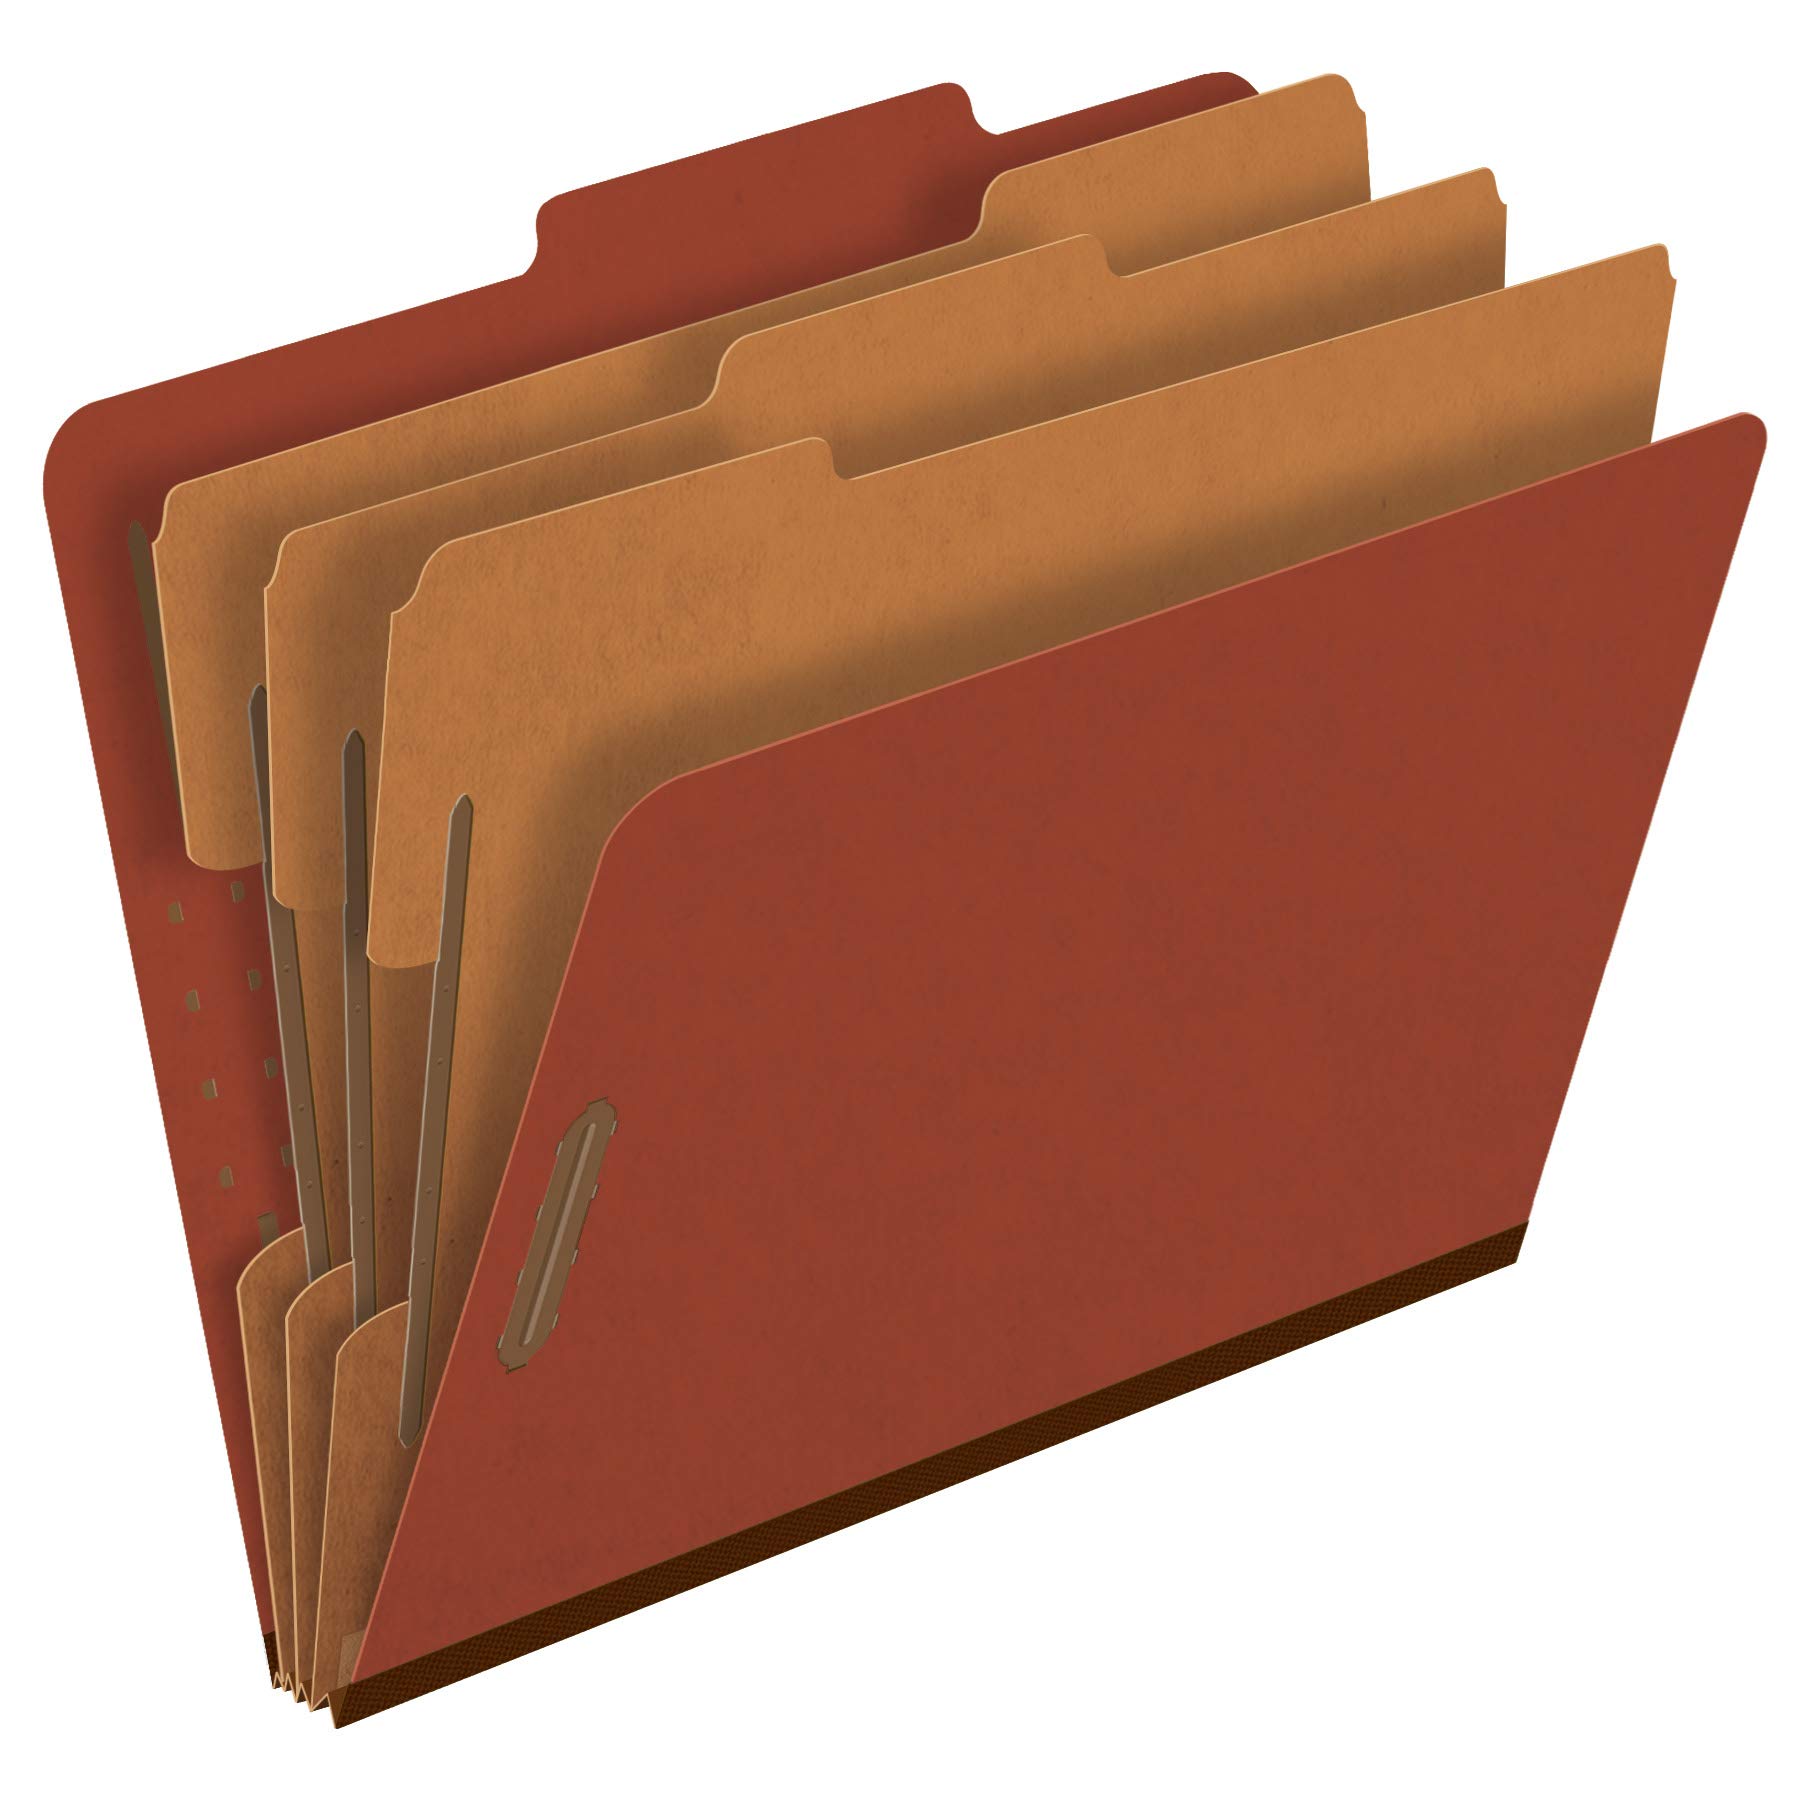 Pendaflex Schnellhefter aus Pressspan, 3 Trennwände, 5,1 cm breite Verschlüsse, 2/5 Tabschnitt, Briefgröße, Rot, 10 Stück (1357R)